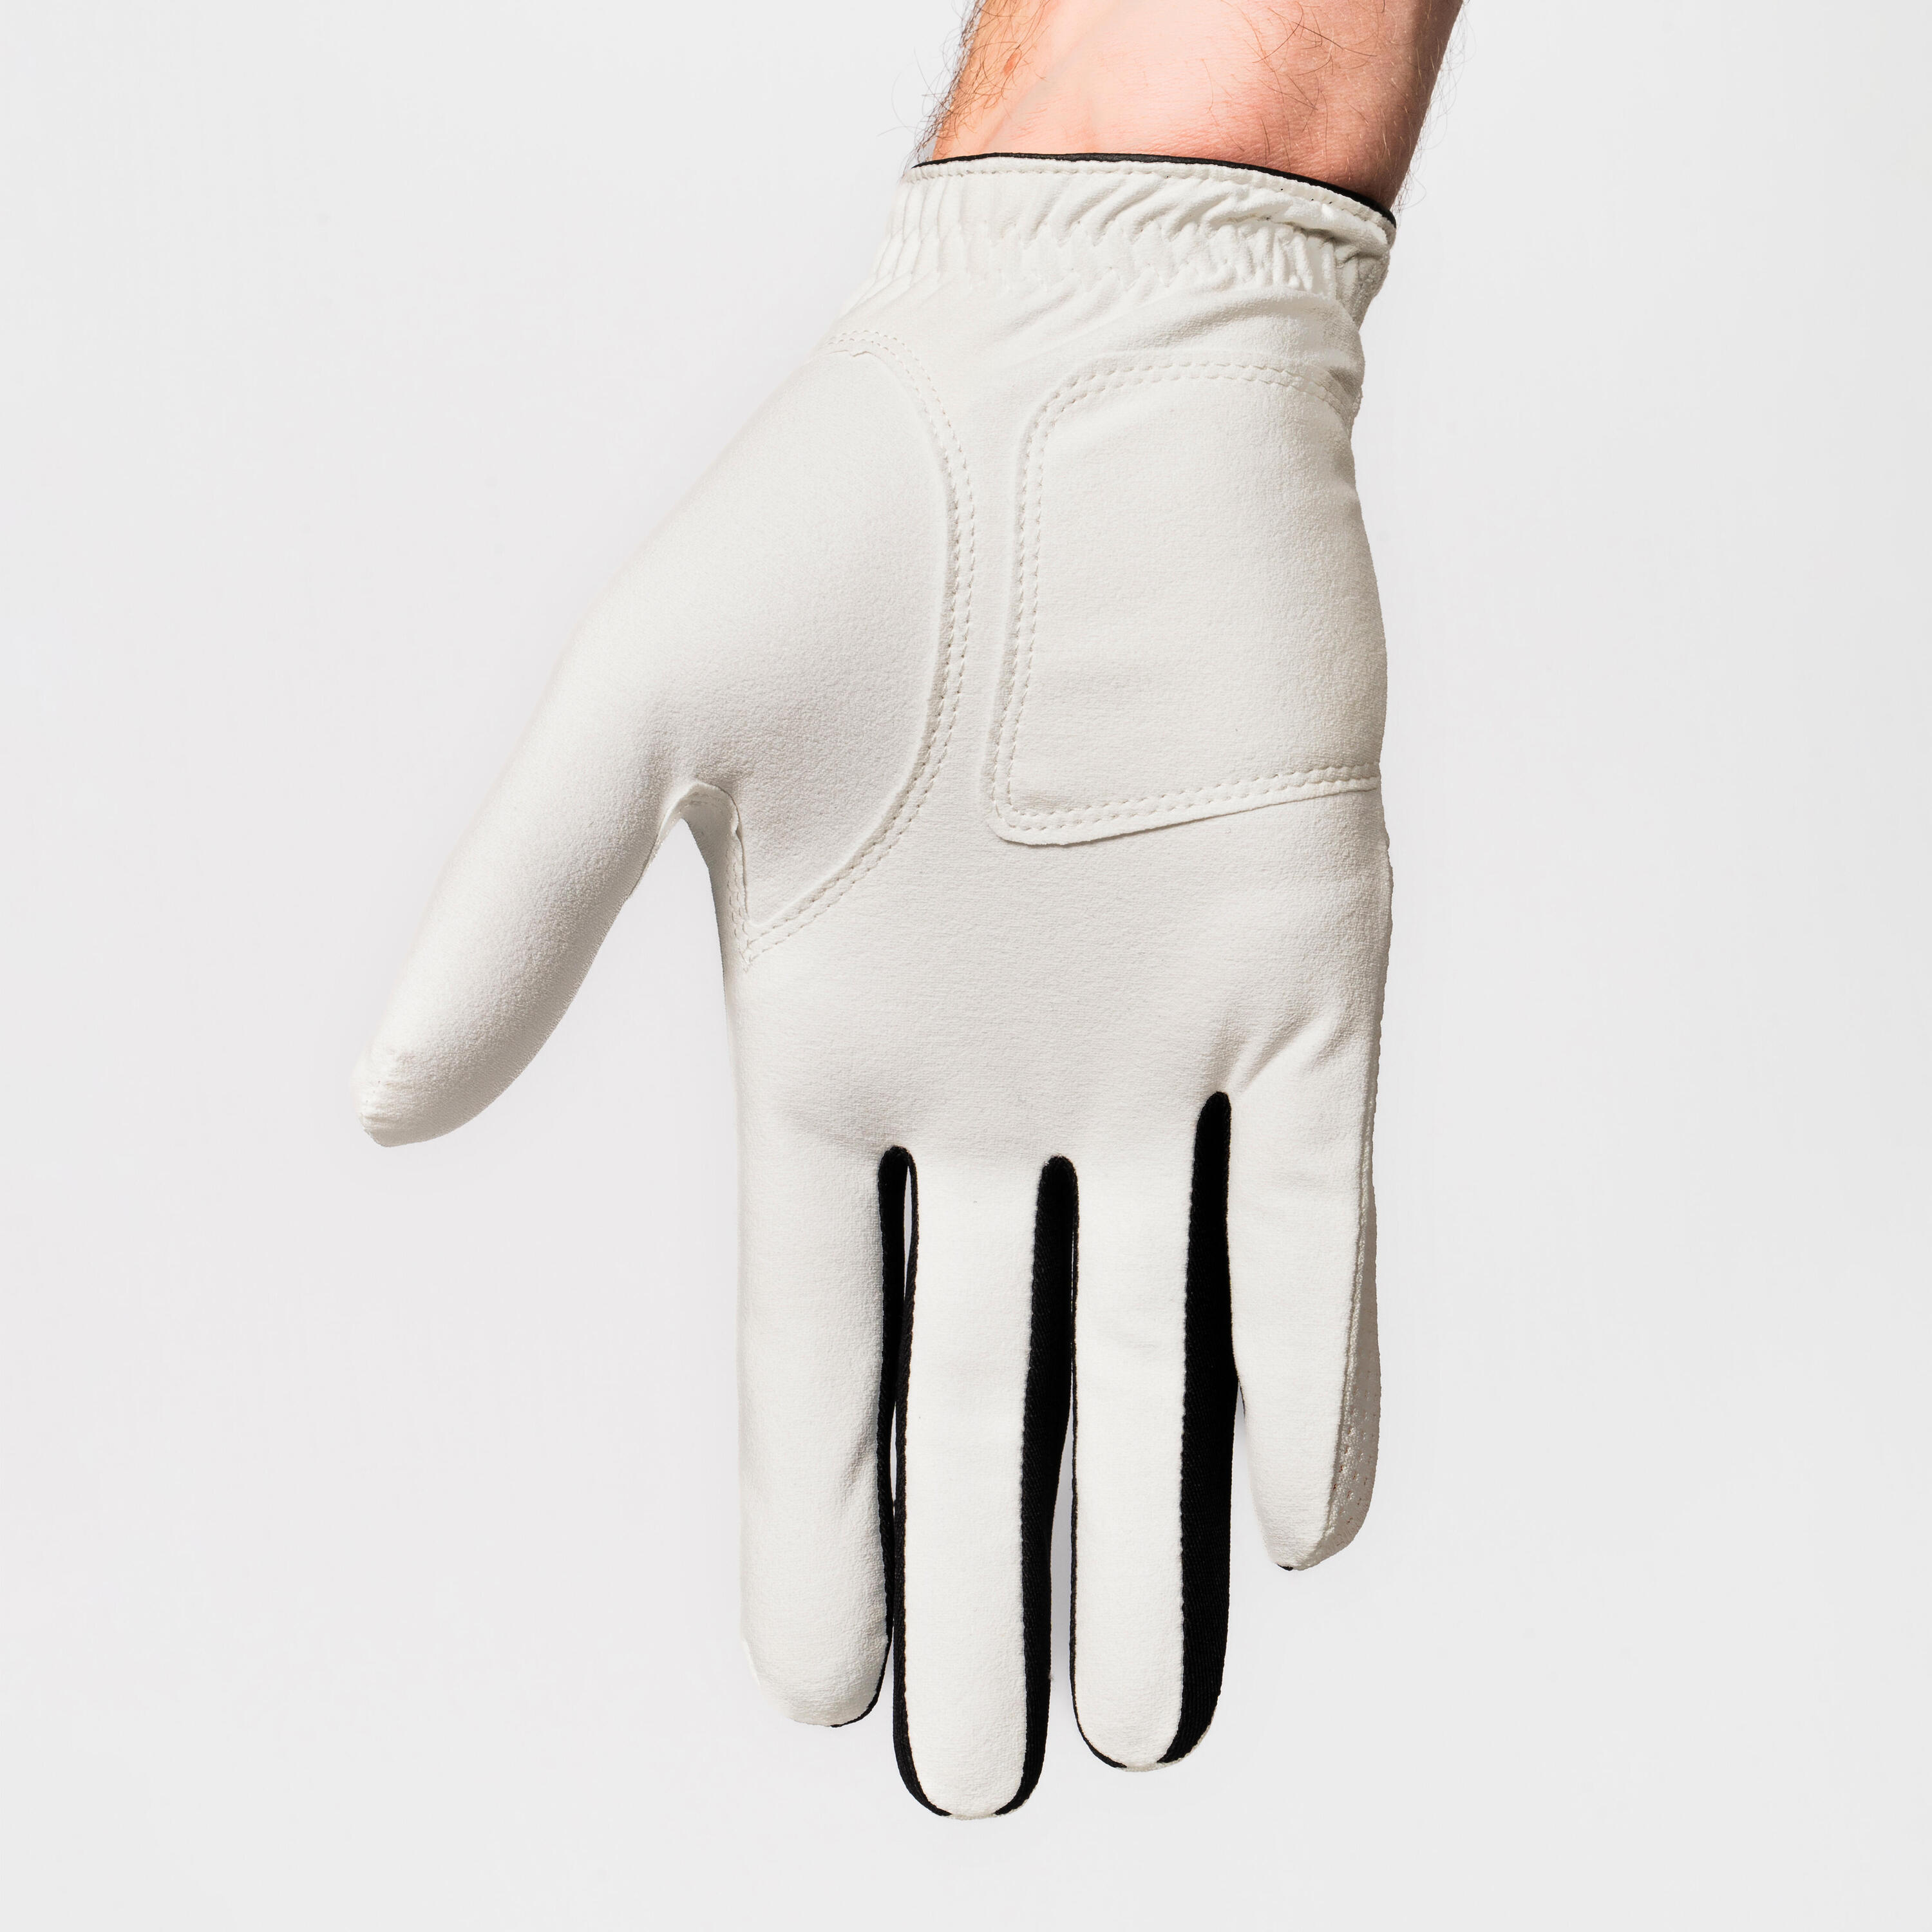 Men's left-handed WW golf gloves - white 2/4